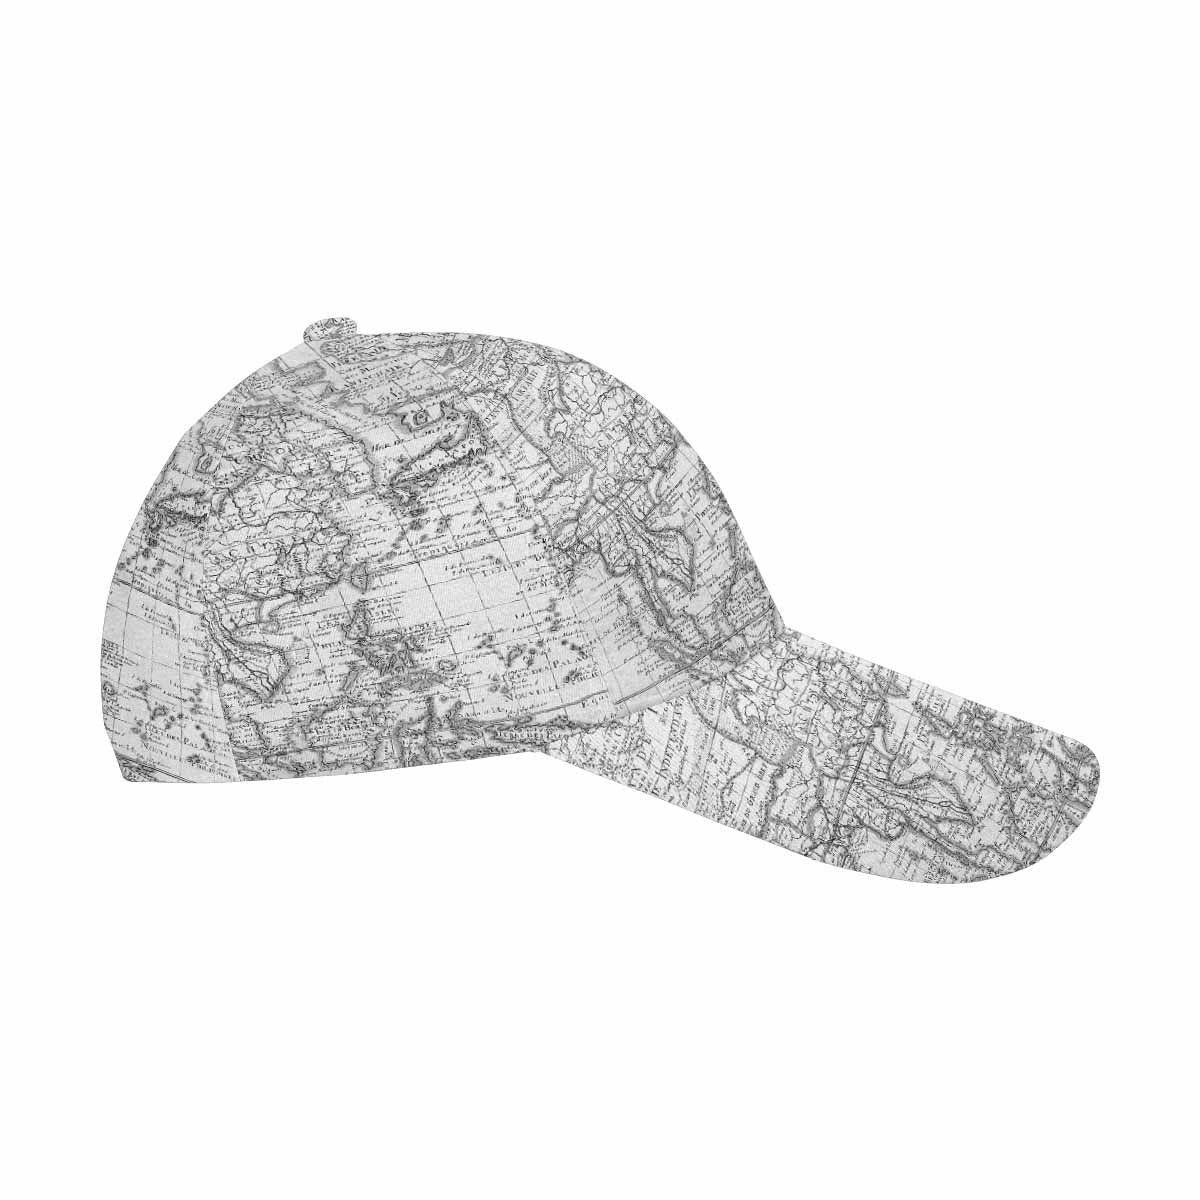 Antique Map design dad cap, trucker hat, Design 8